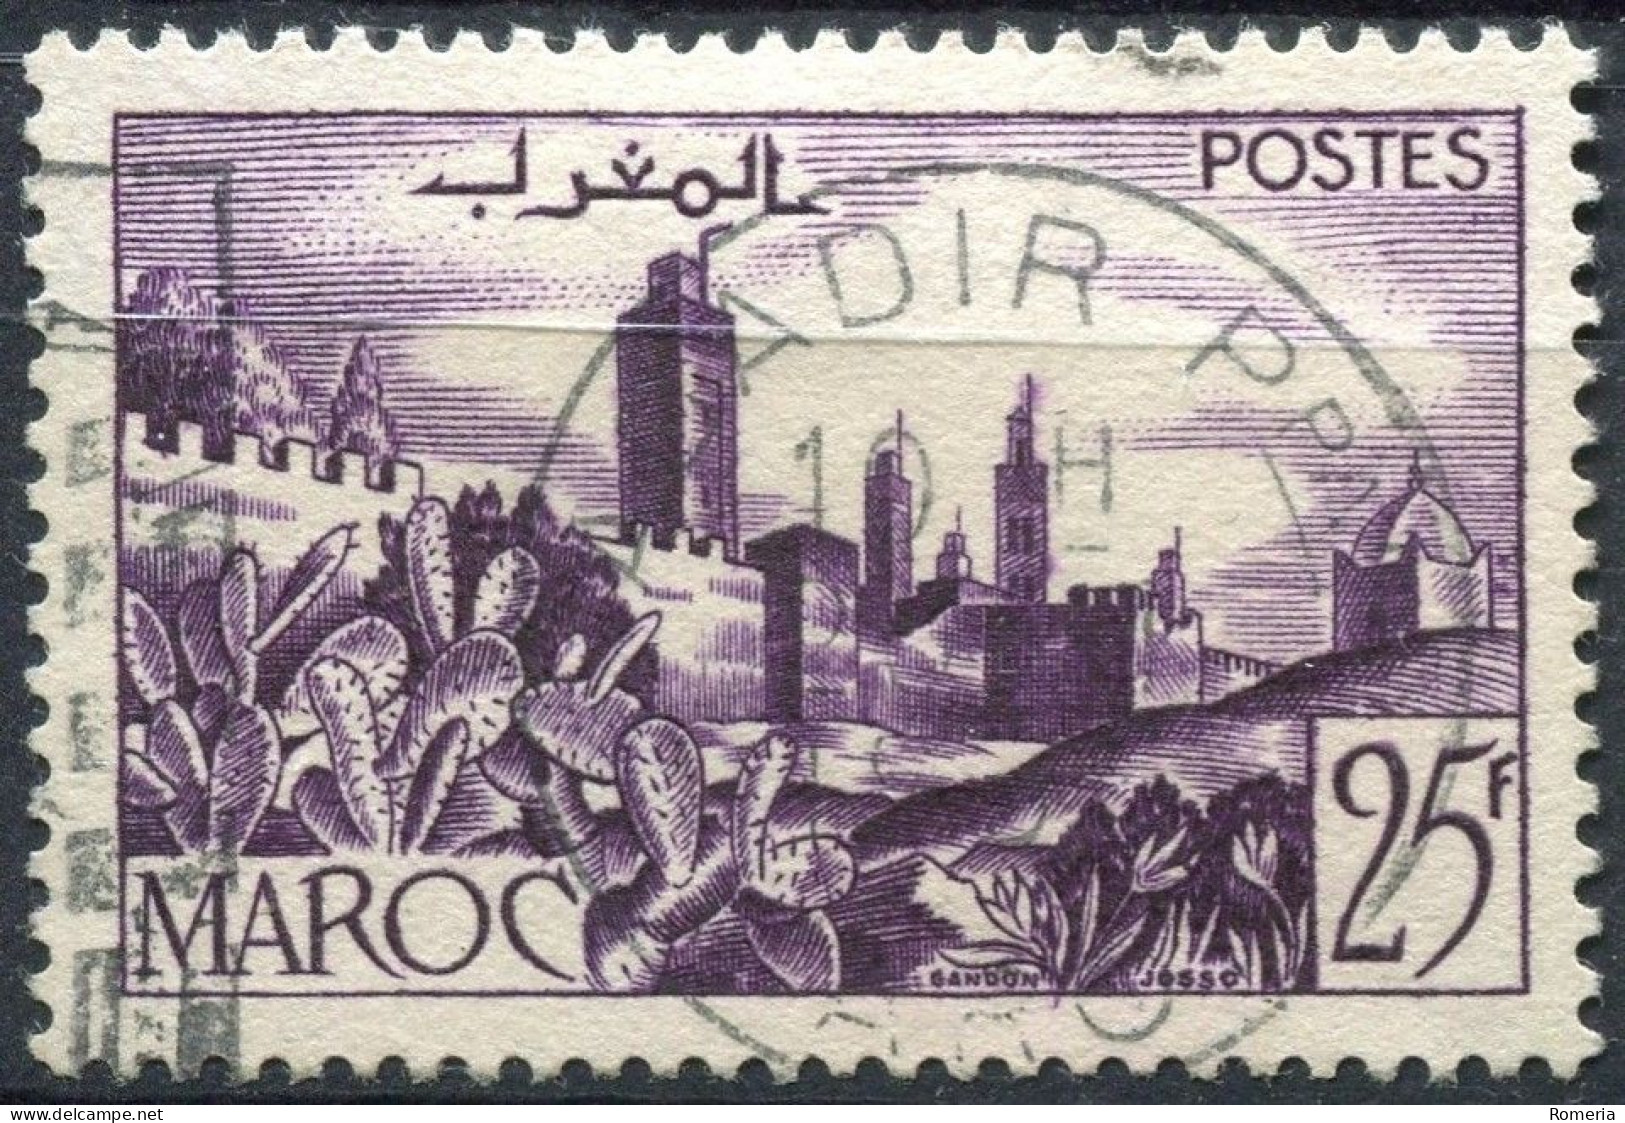 Maroc - 1947 -> 1954 - Lot série courante - oblitérés - Yt 246 -> 258 (Sauf 258 A) - 292-293-298-305-327-328-334